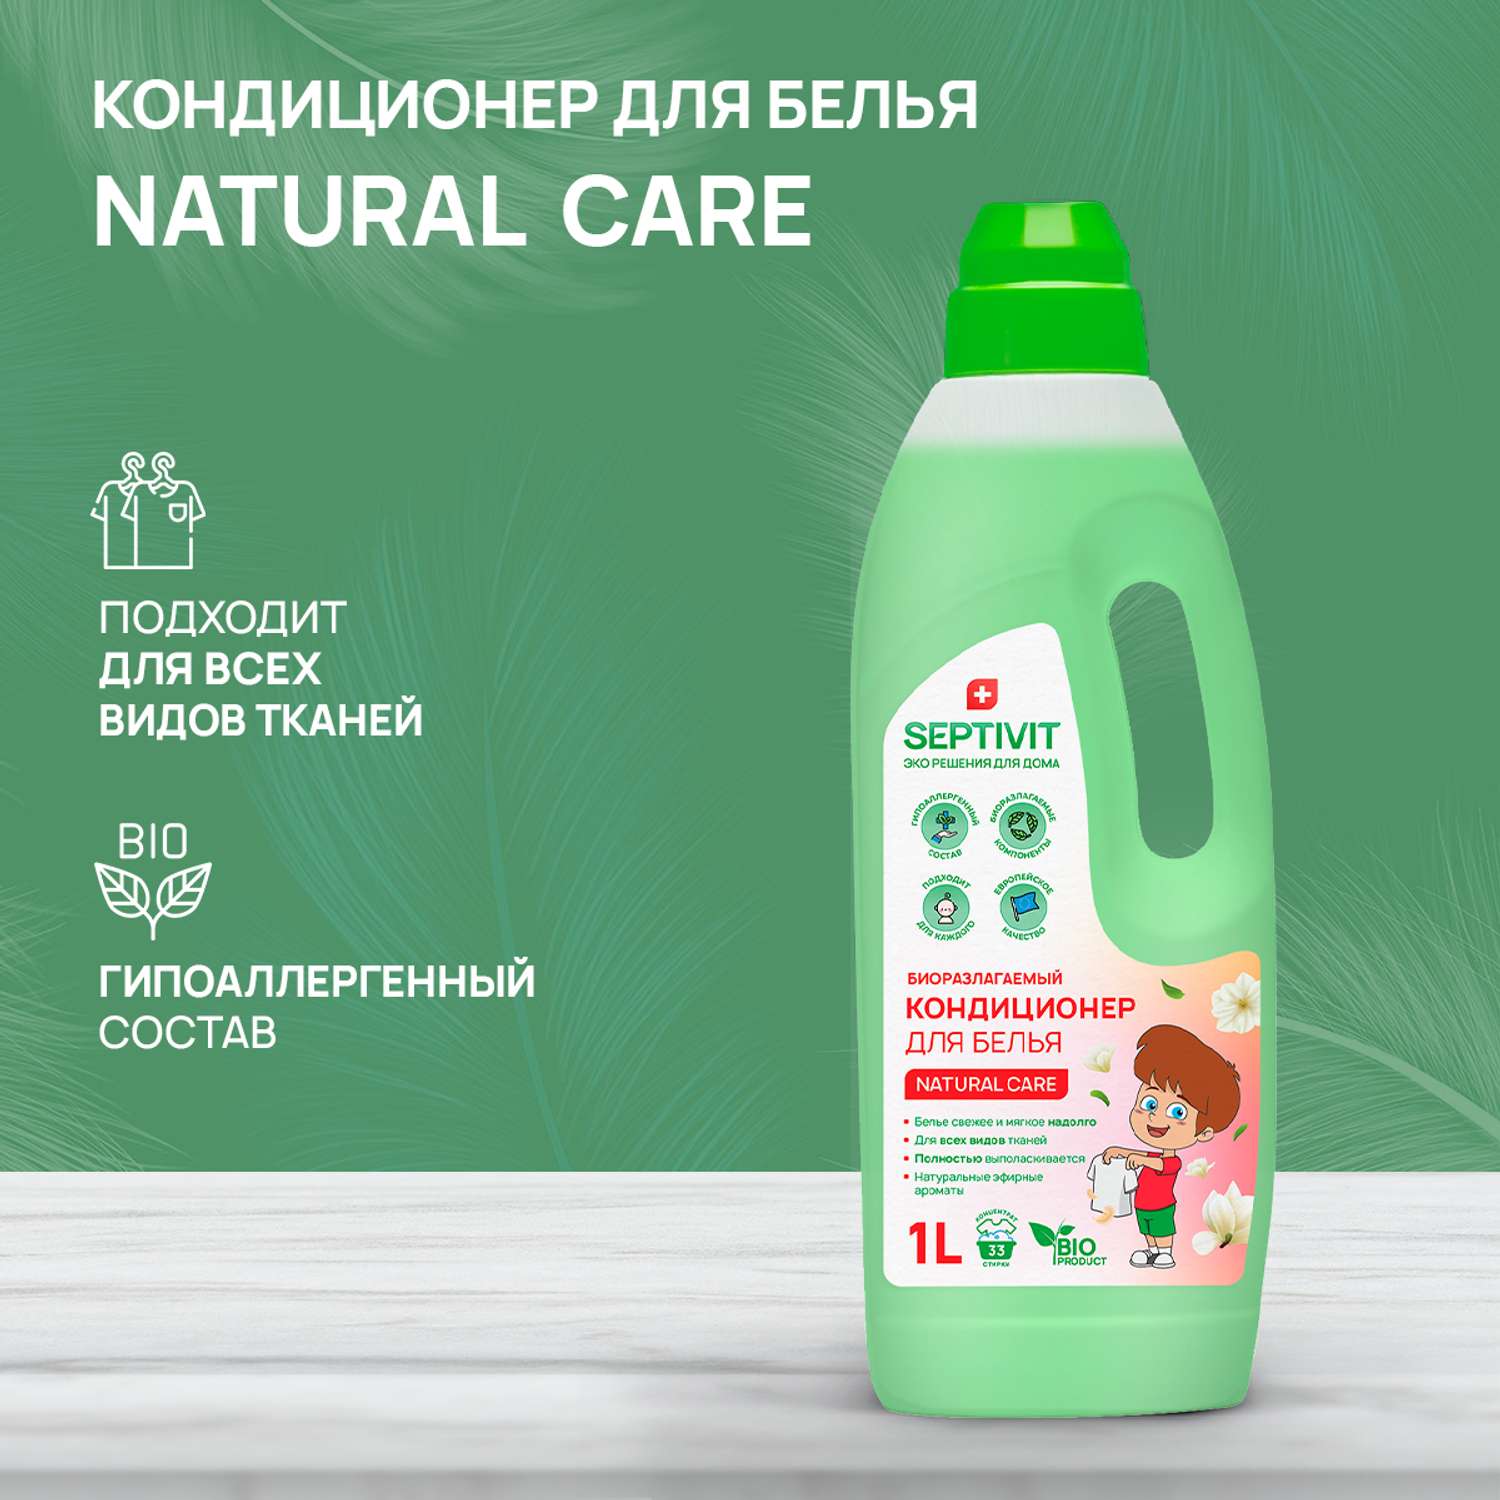 Кондиционер для белья SEPTIVIT Premium 1л с ароматом Natural care - фото 2